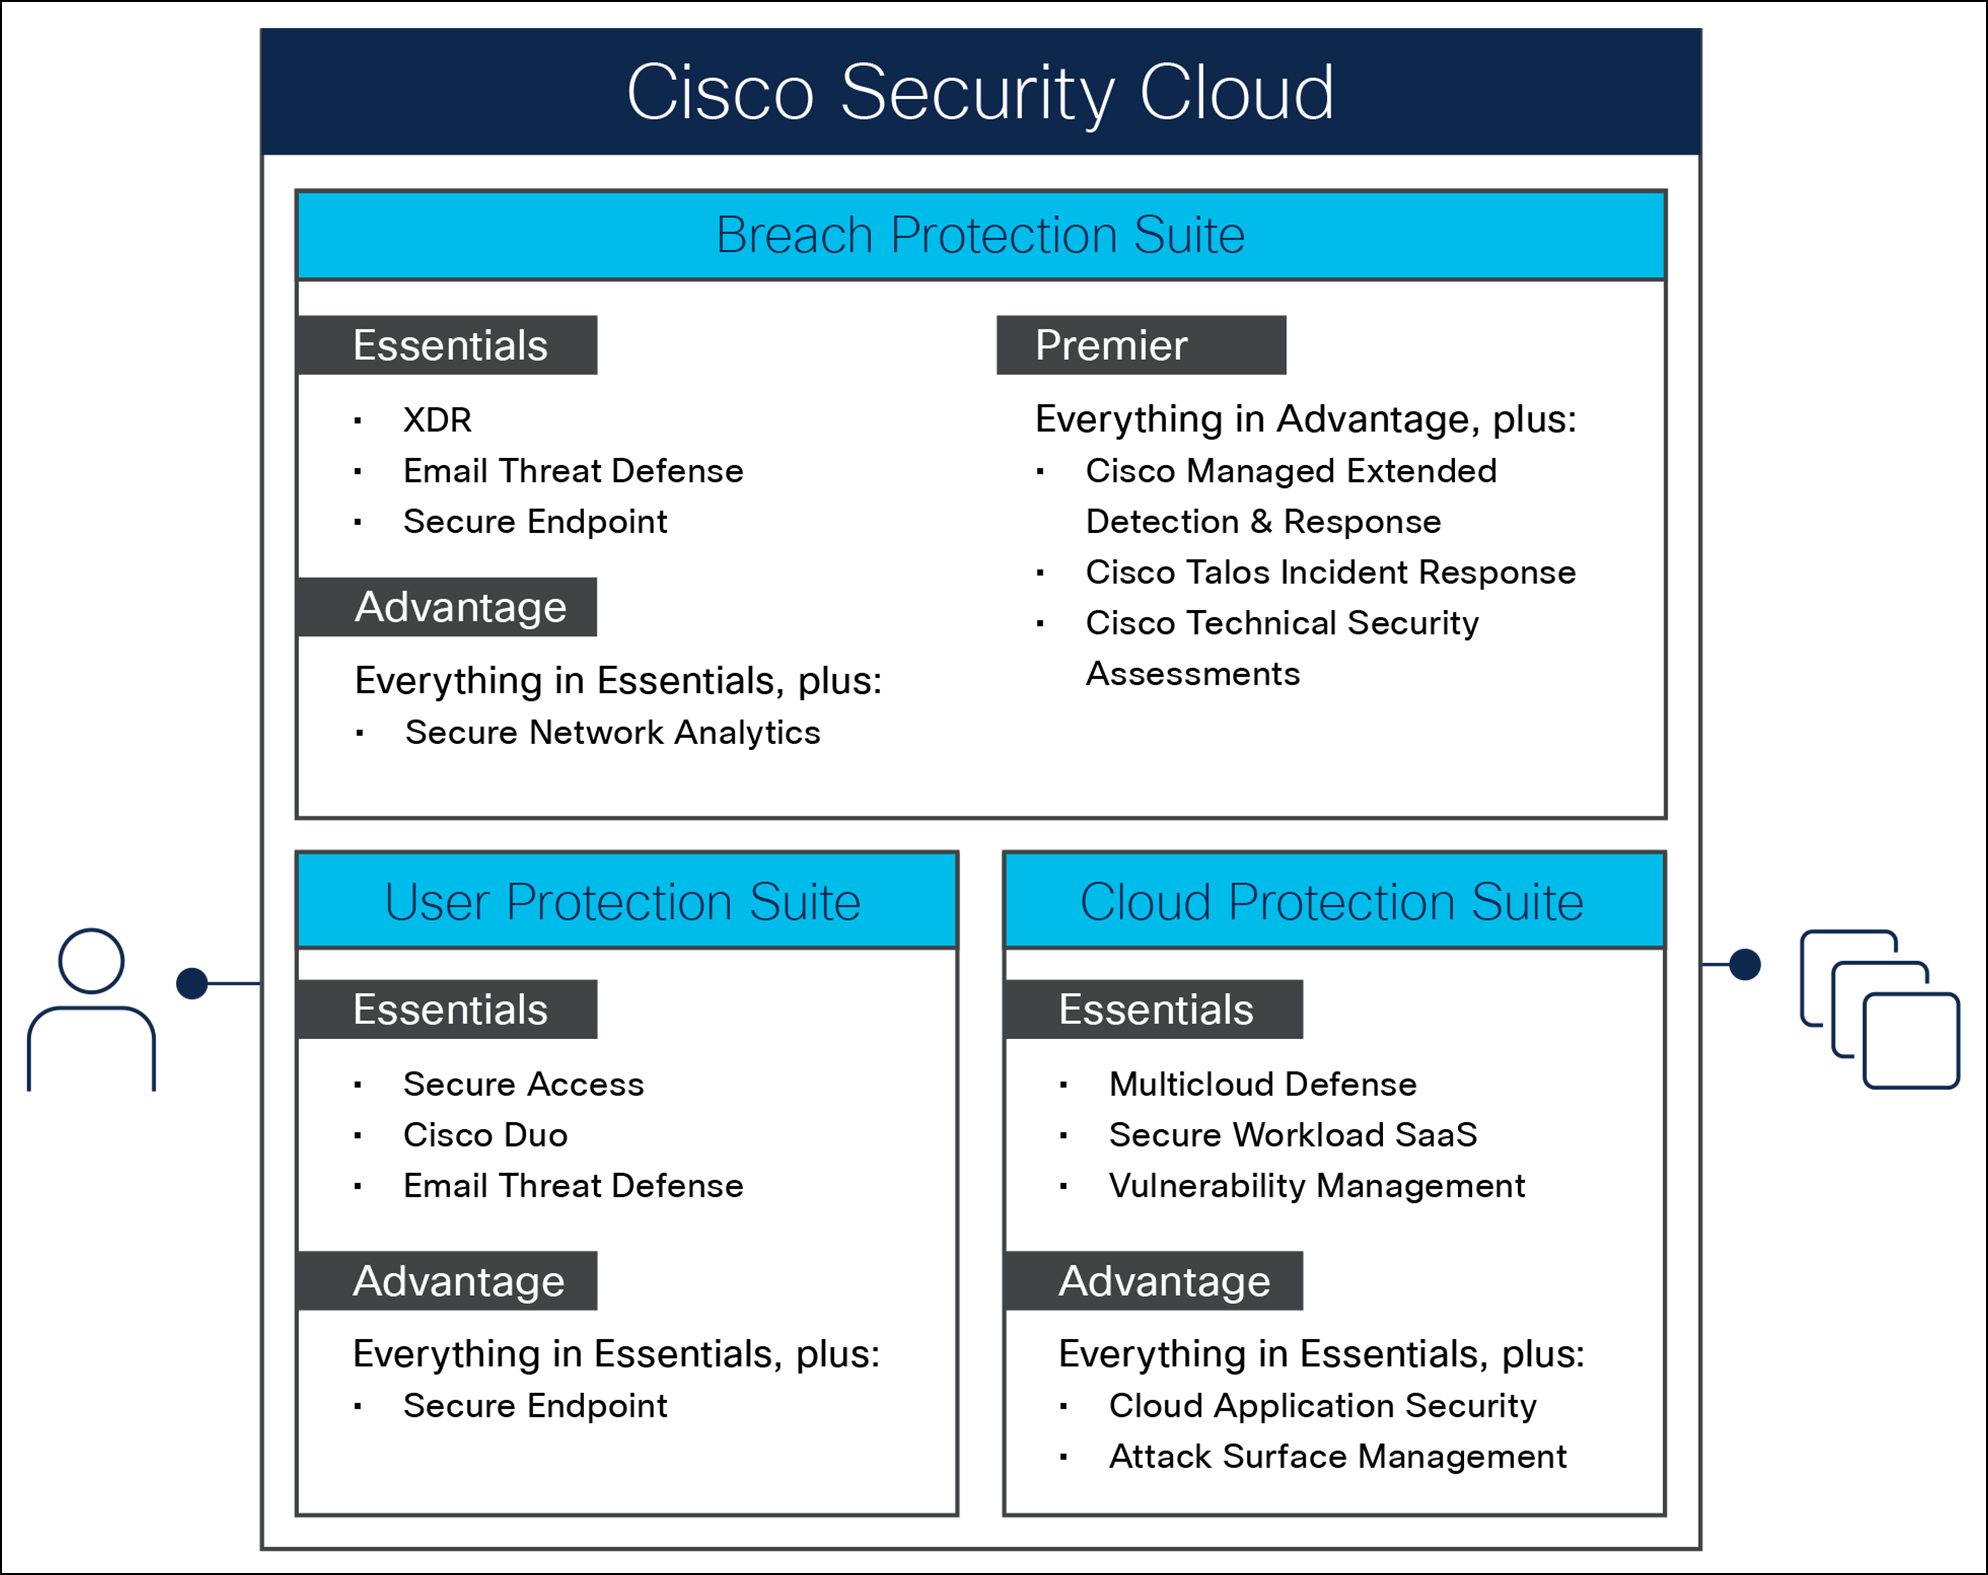 Cisco Security Cloud